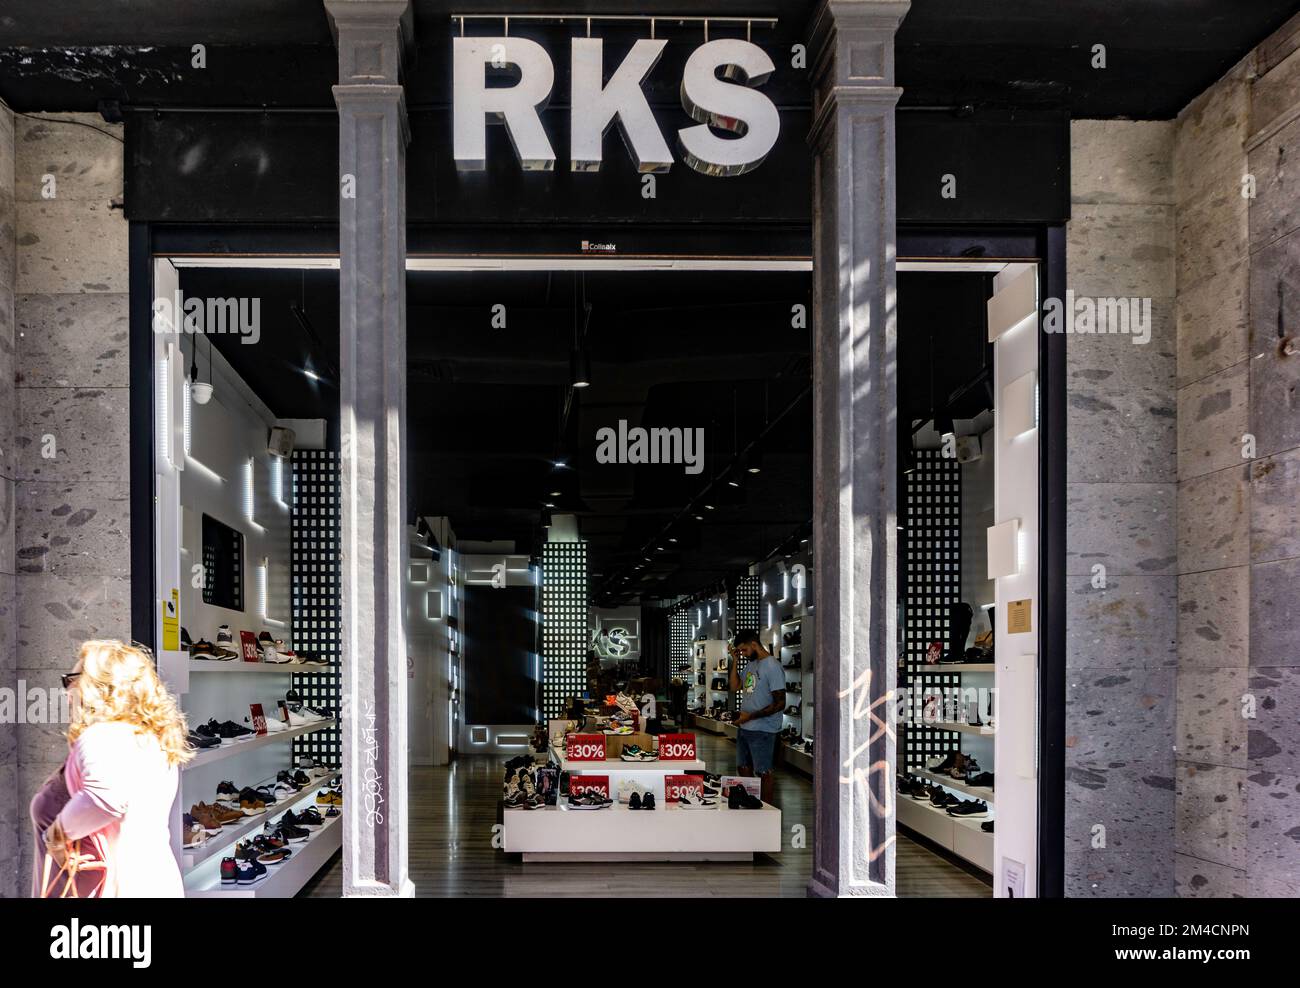 Un negozio di calzature RKS a Las Palmas, Gran Canaria, che serve scarpe da uomo, donna e bambino. Foto Stock